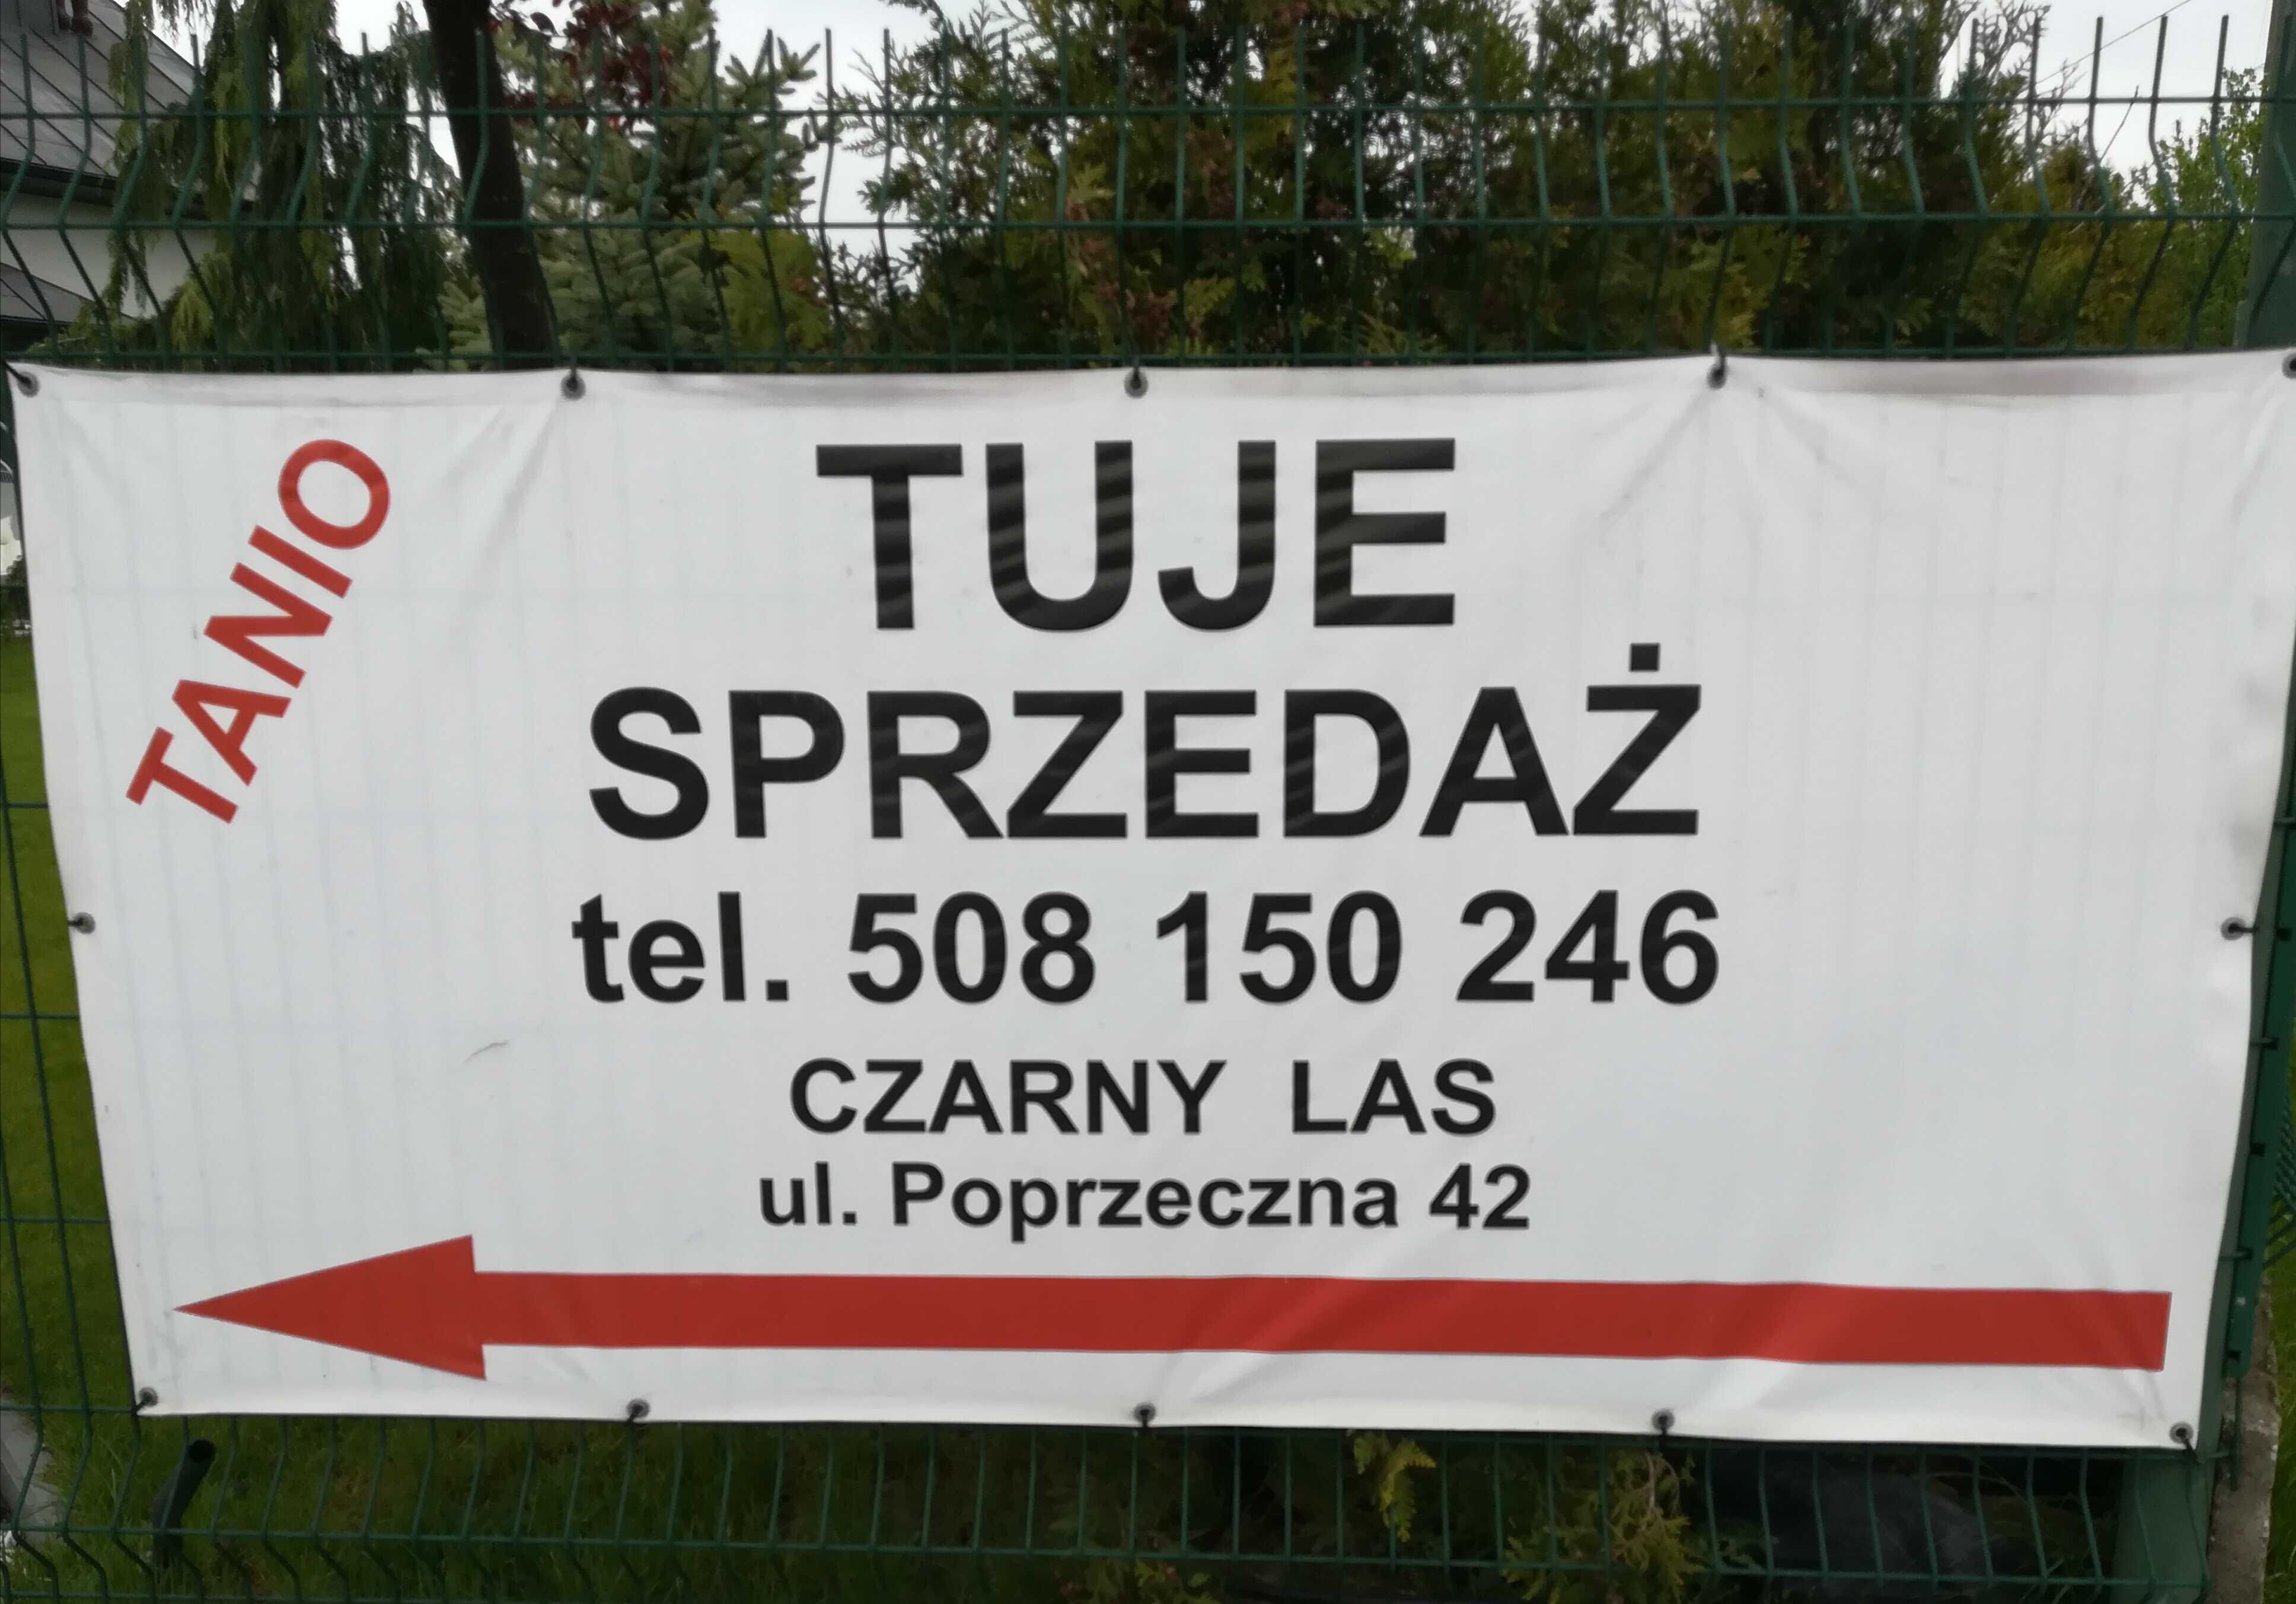 PROMOCJA TUJE z gruntu SZMARAGD 2 metrowe - TUJA stożkowa - 100 zł.